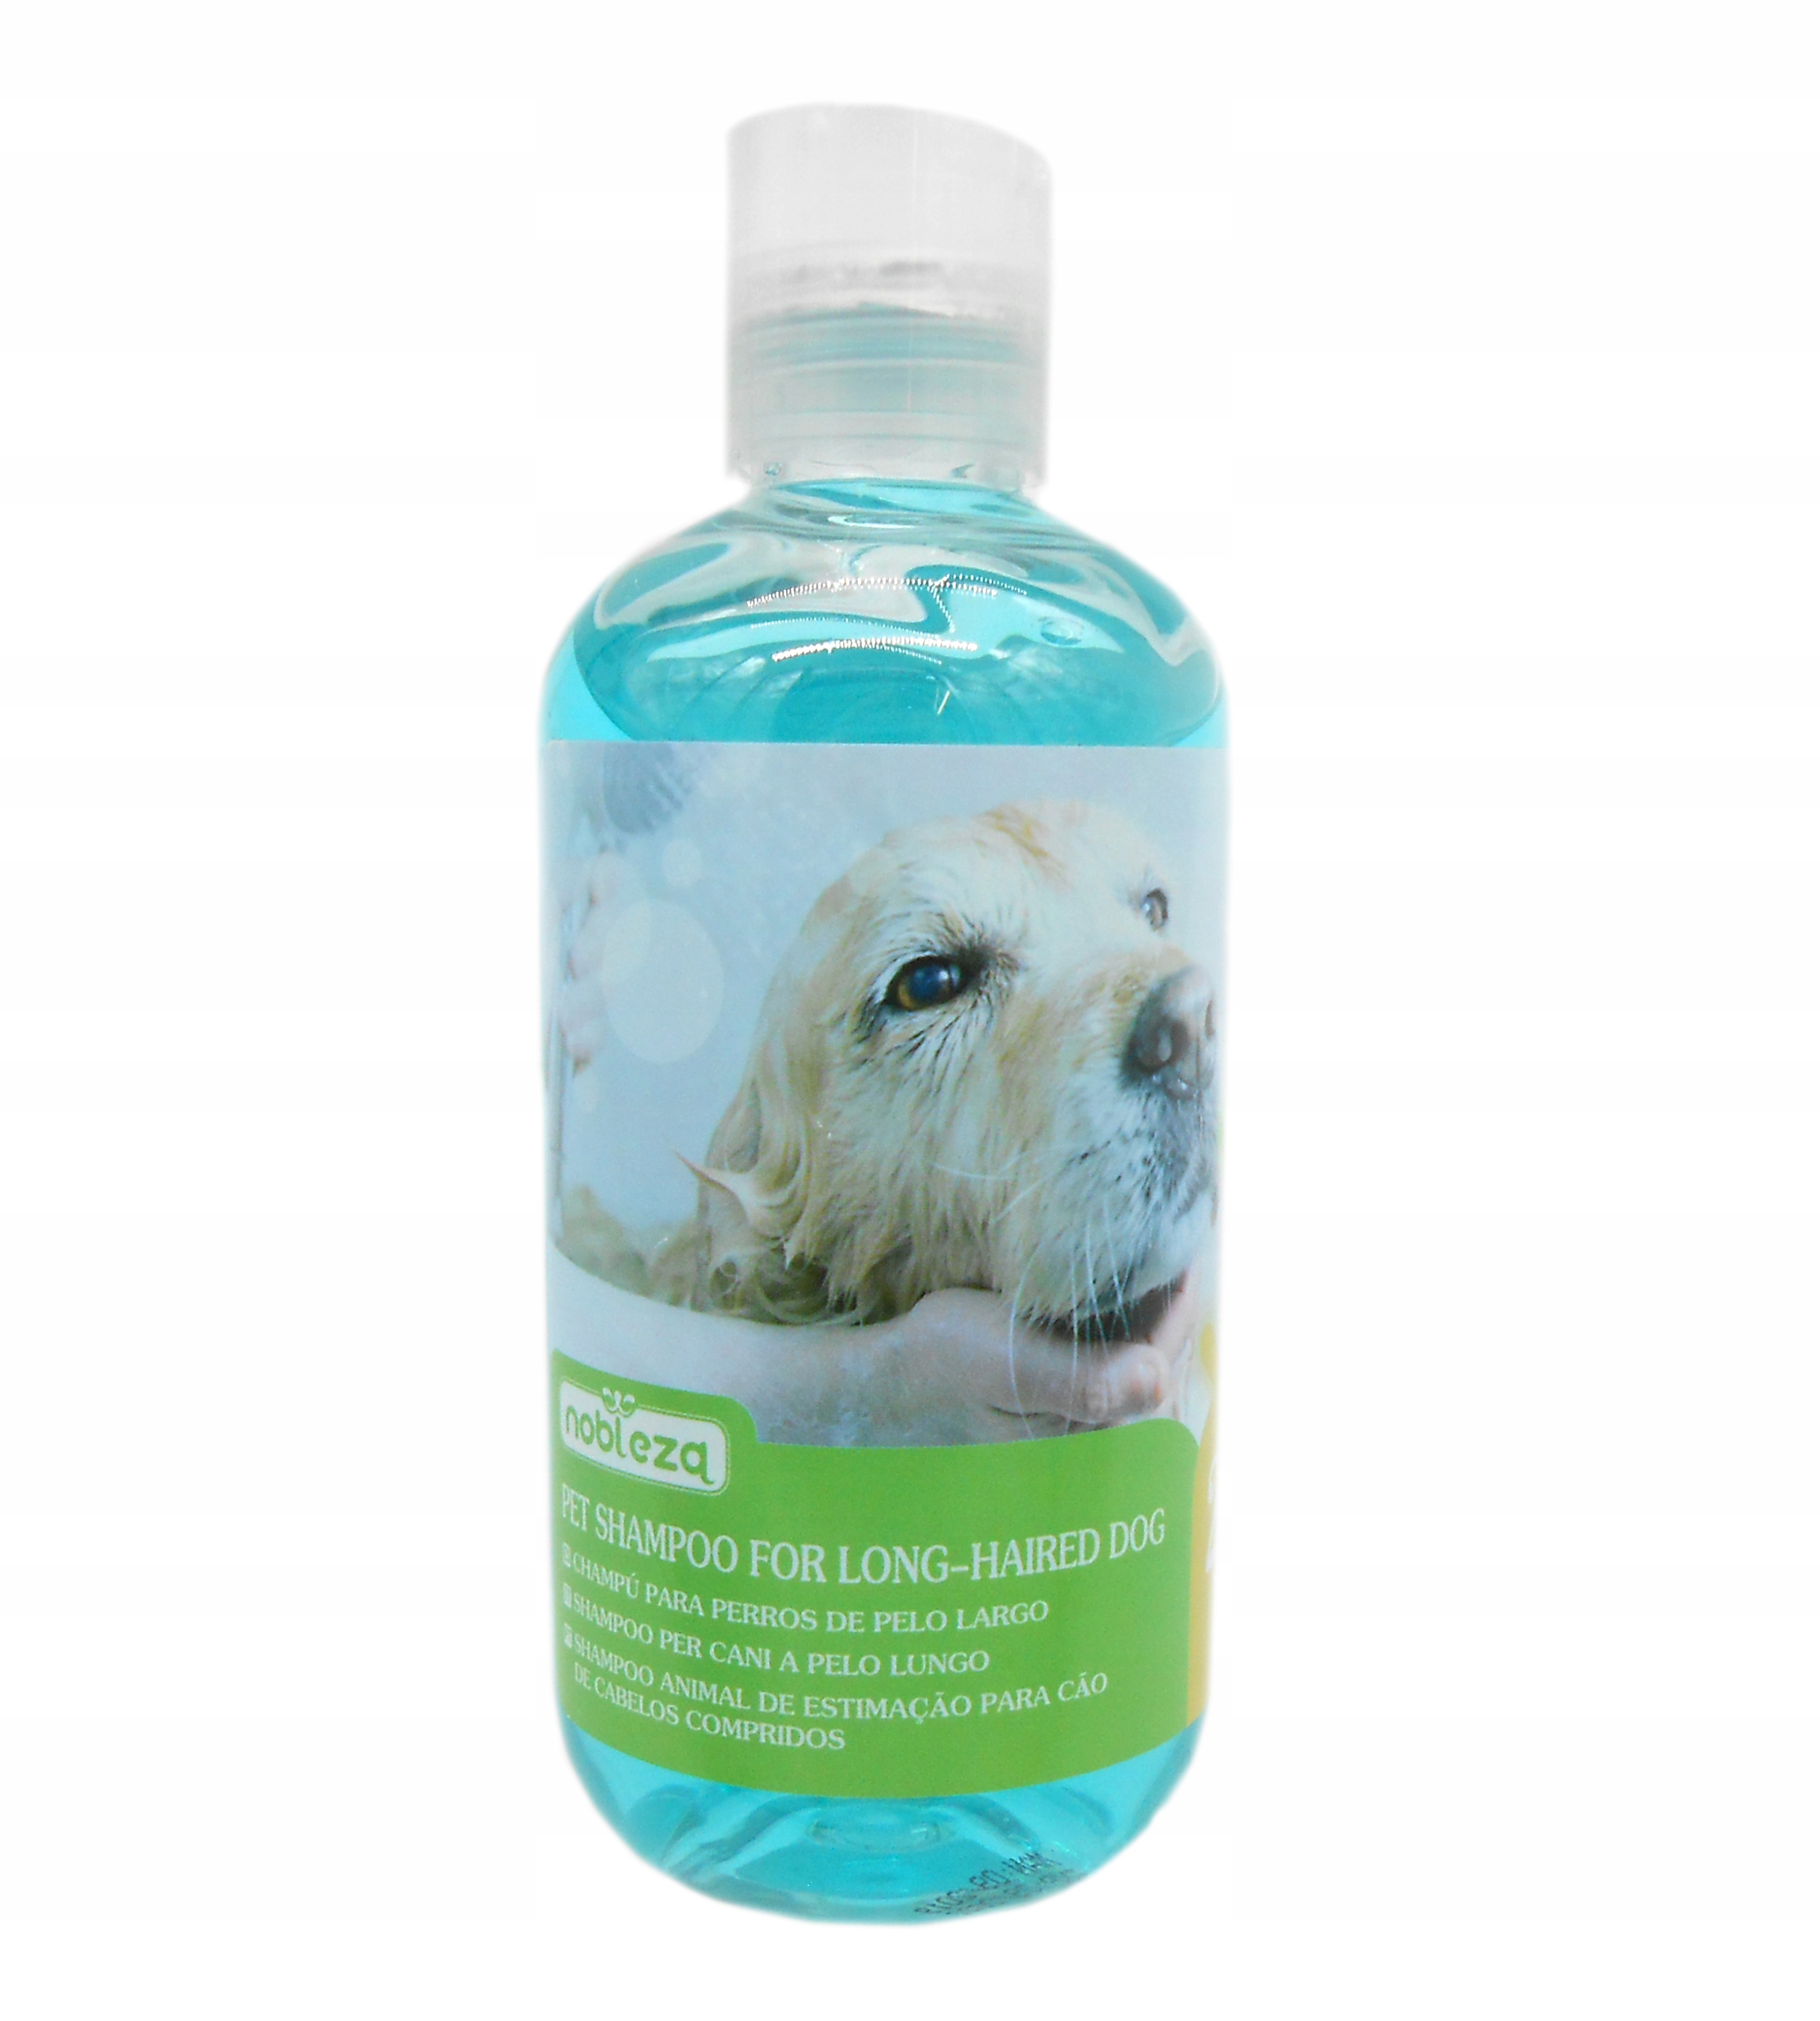 szampon dla psow dlugowlosych allegro